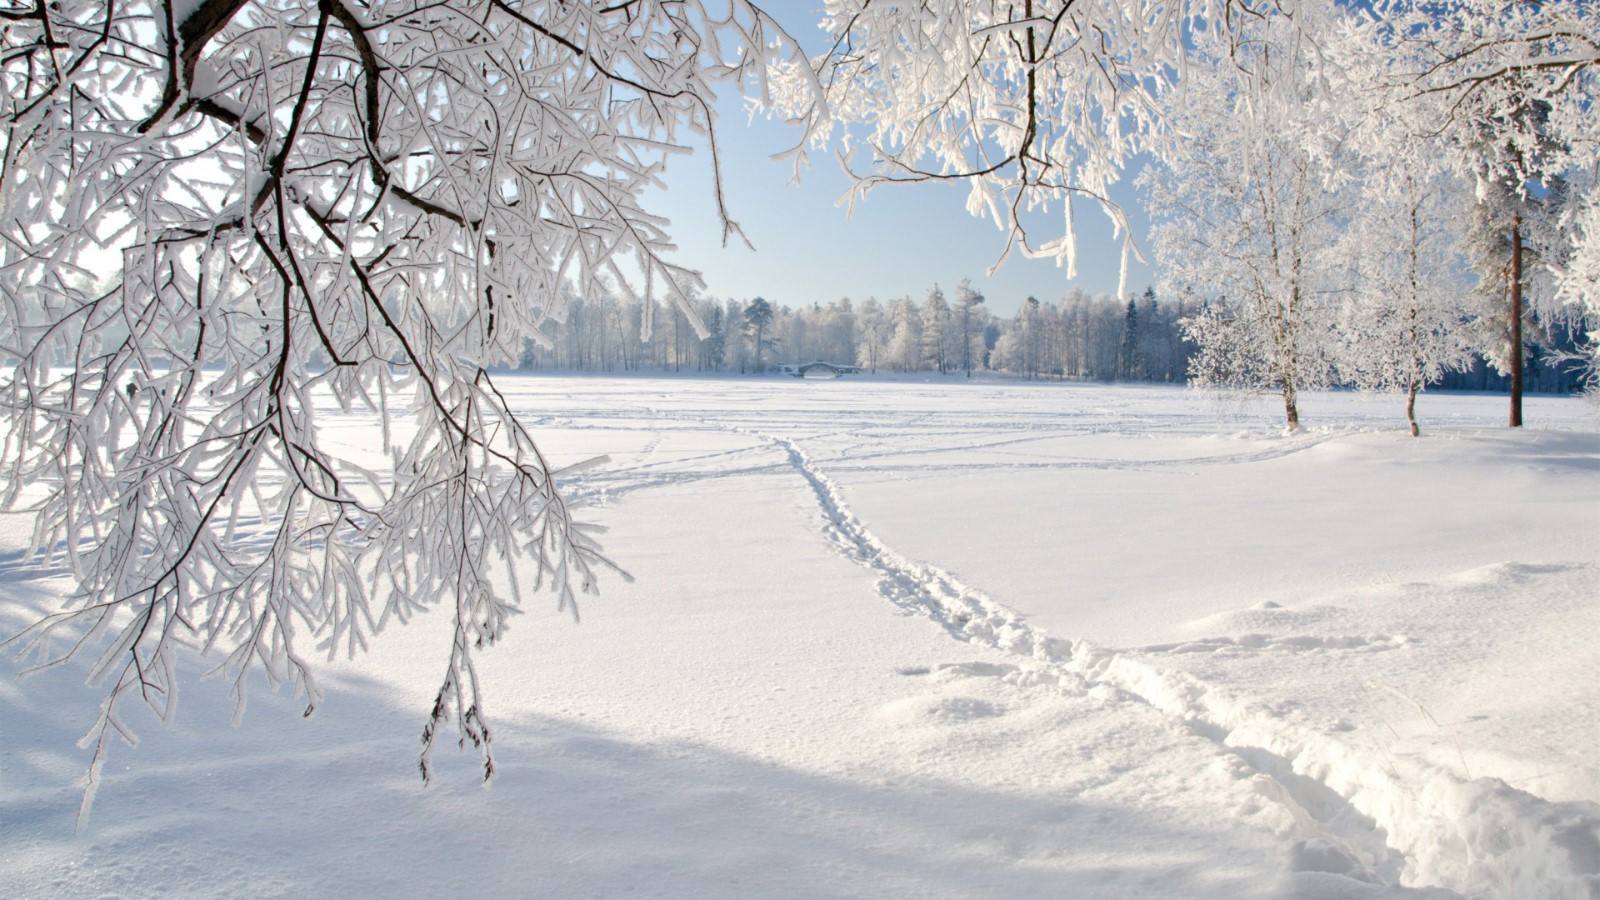 北方有千里冰封,万里雪飘的自然景观,南方也有雪花飞舞,漫天银色